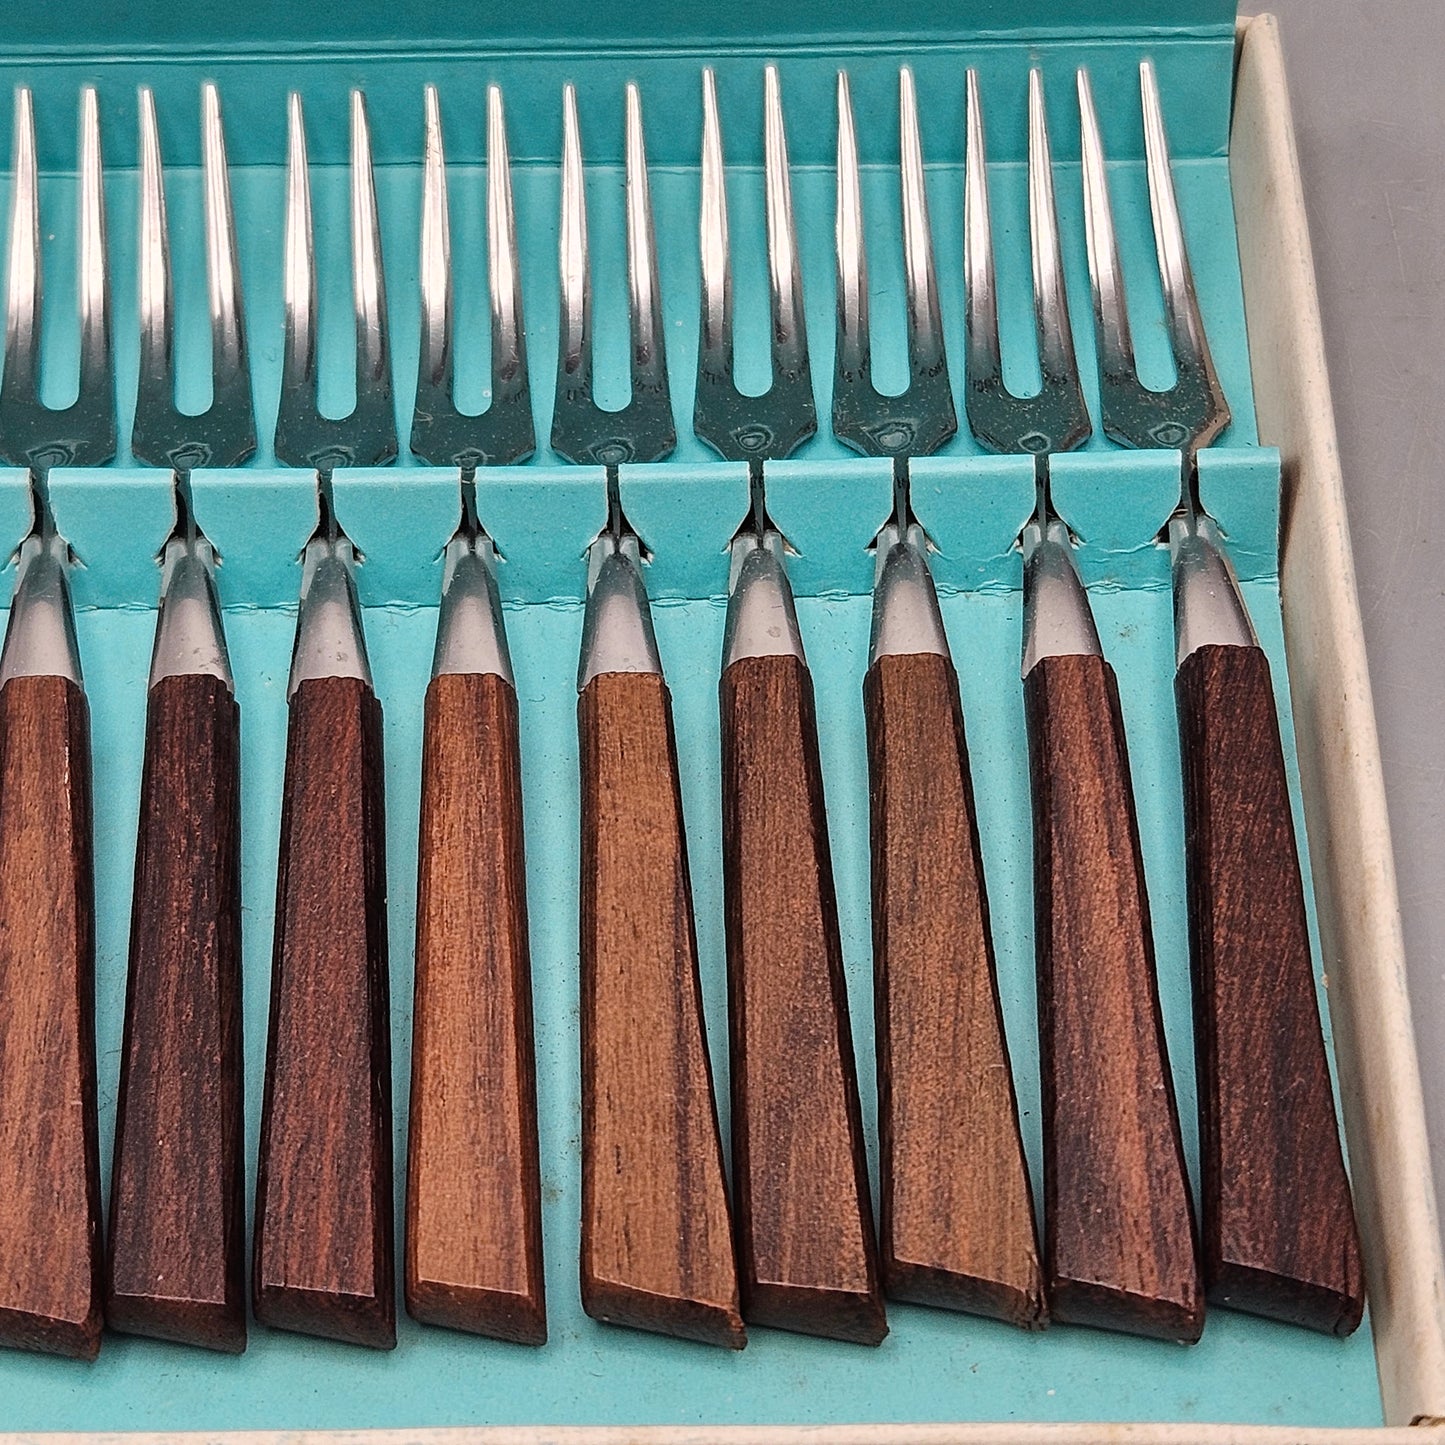 Set of 12 Vintage Teakwood 18-8 Stainless Steel Forks - Made in Japan